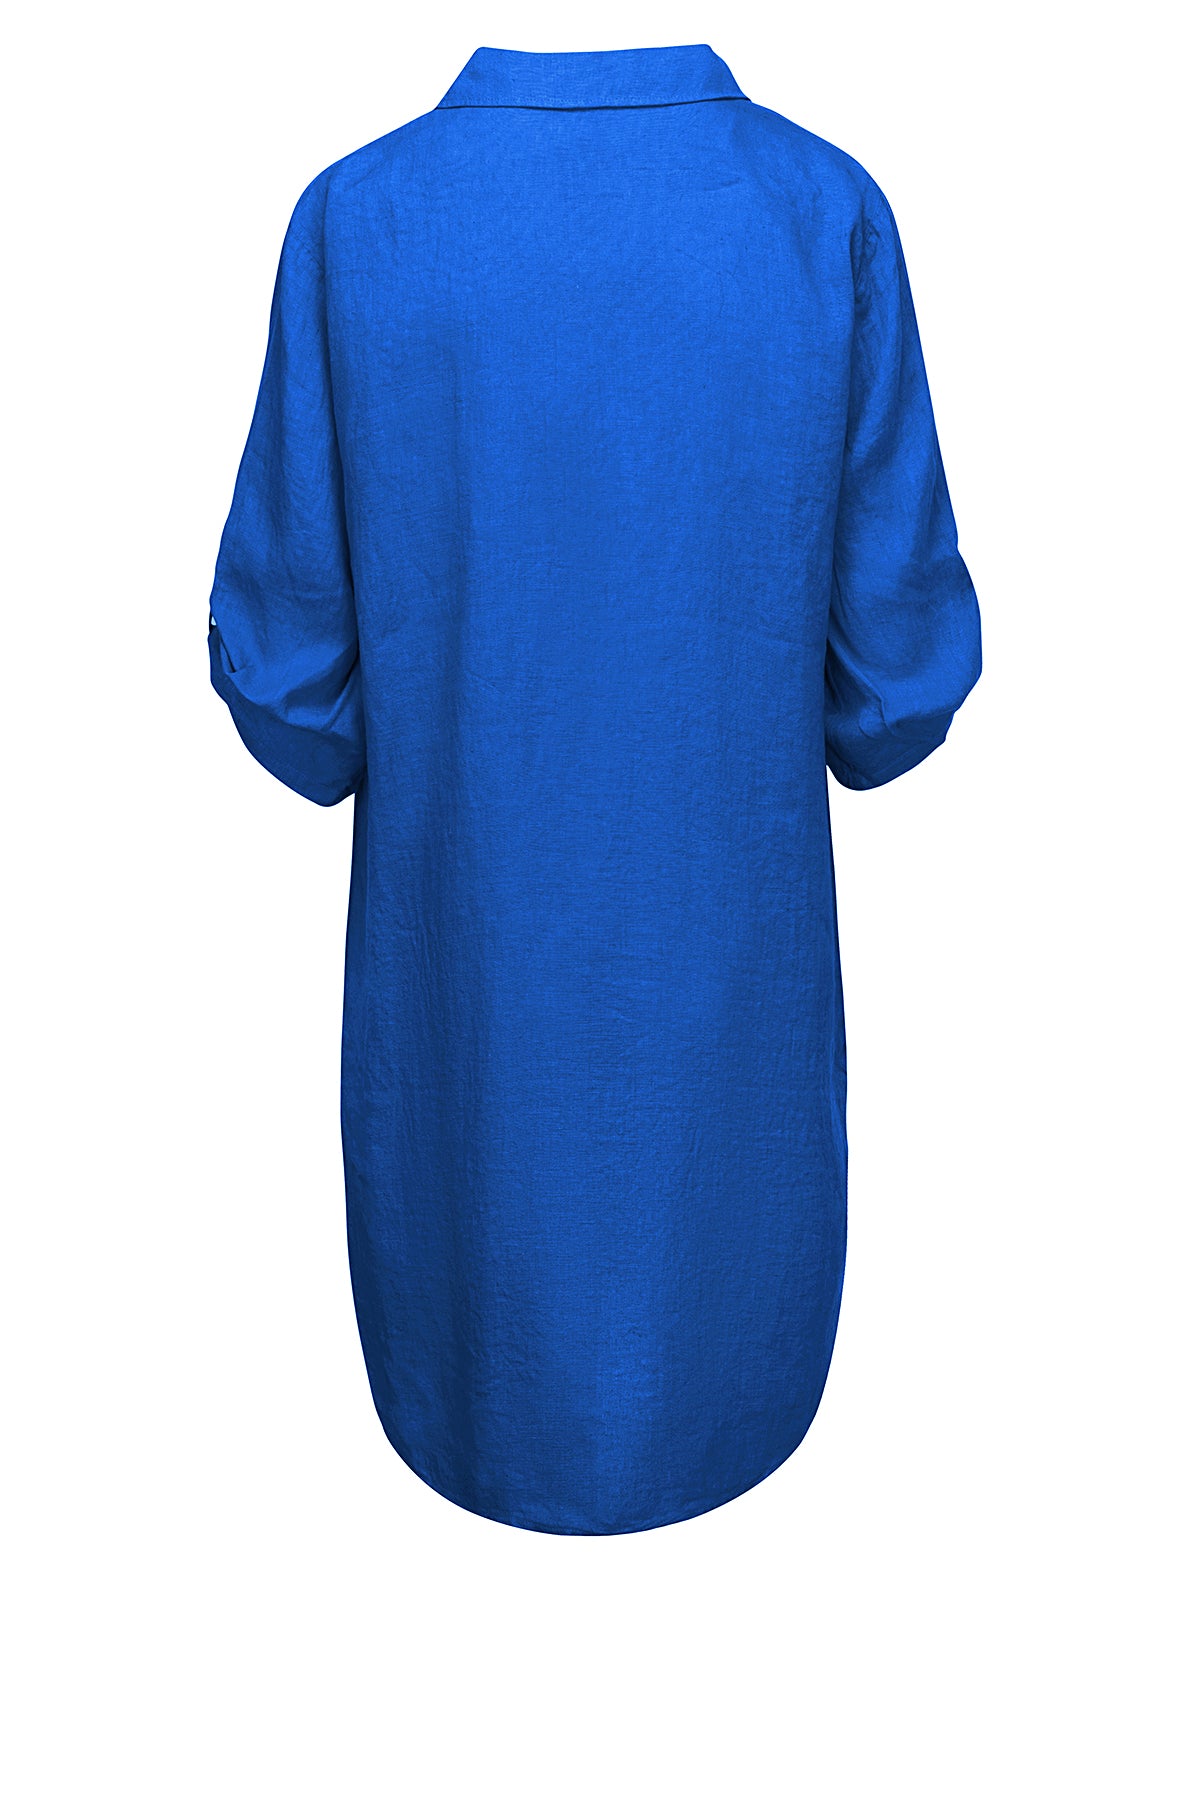 LUXZUZ // ONE TWO Siwinia Dress Dress 558 Dazzling Blue